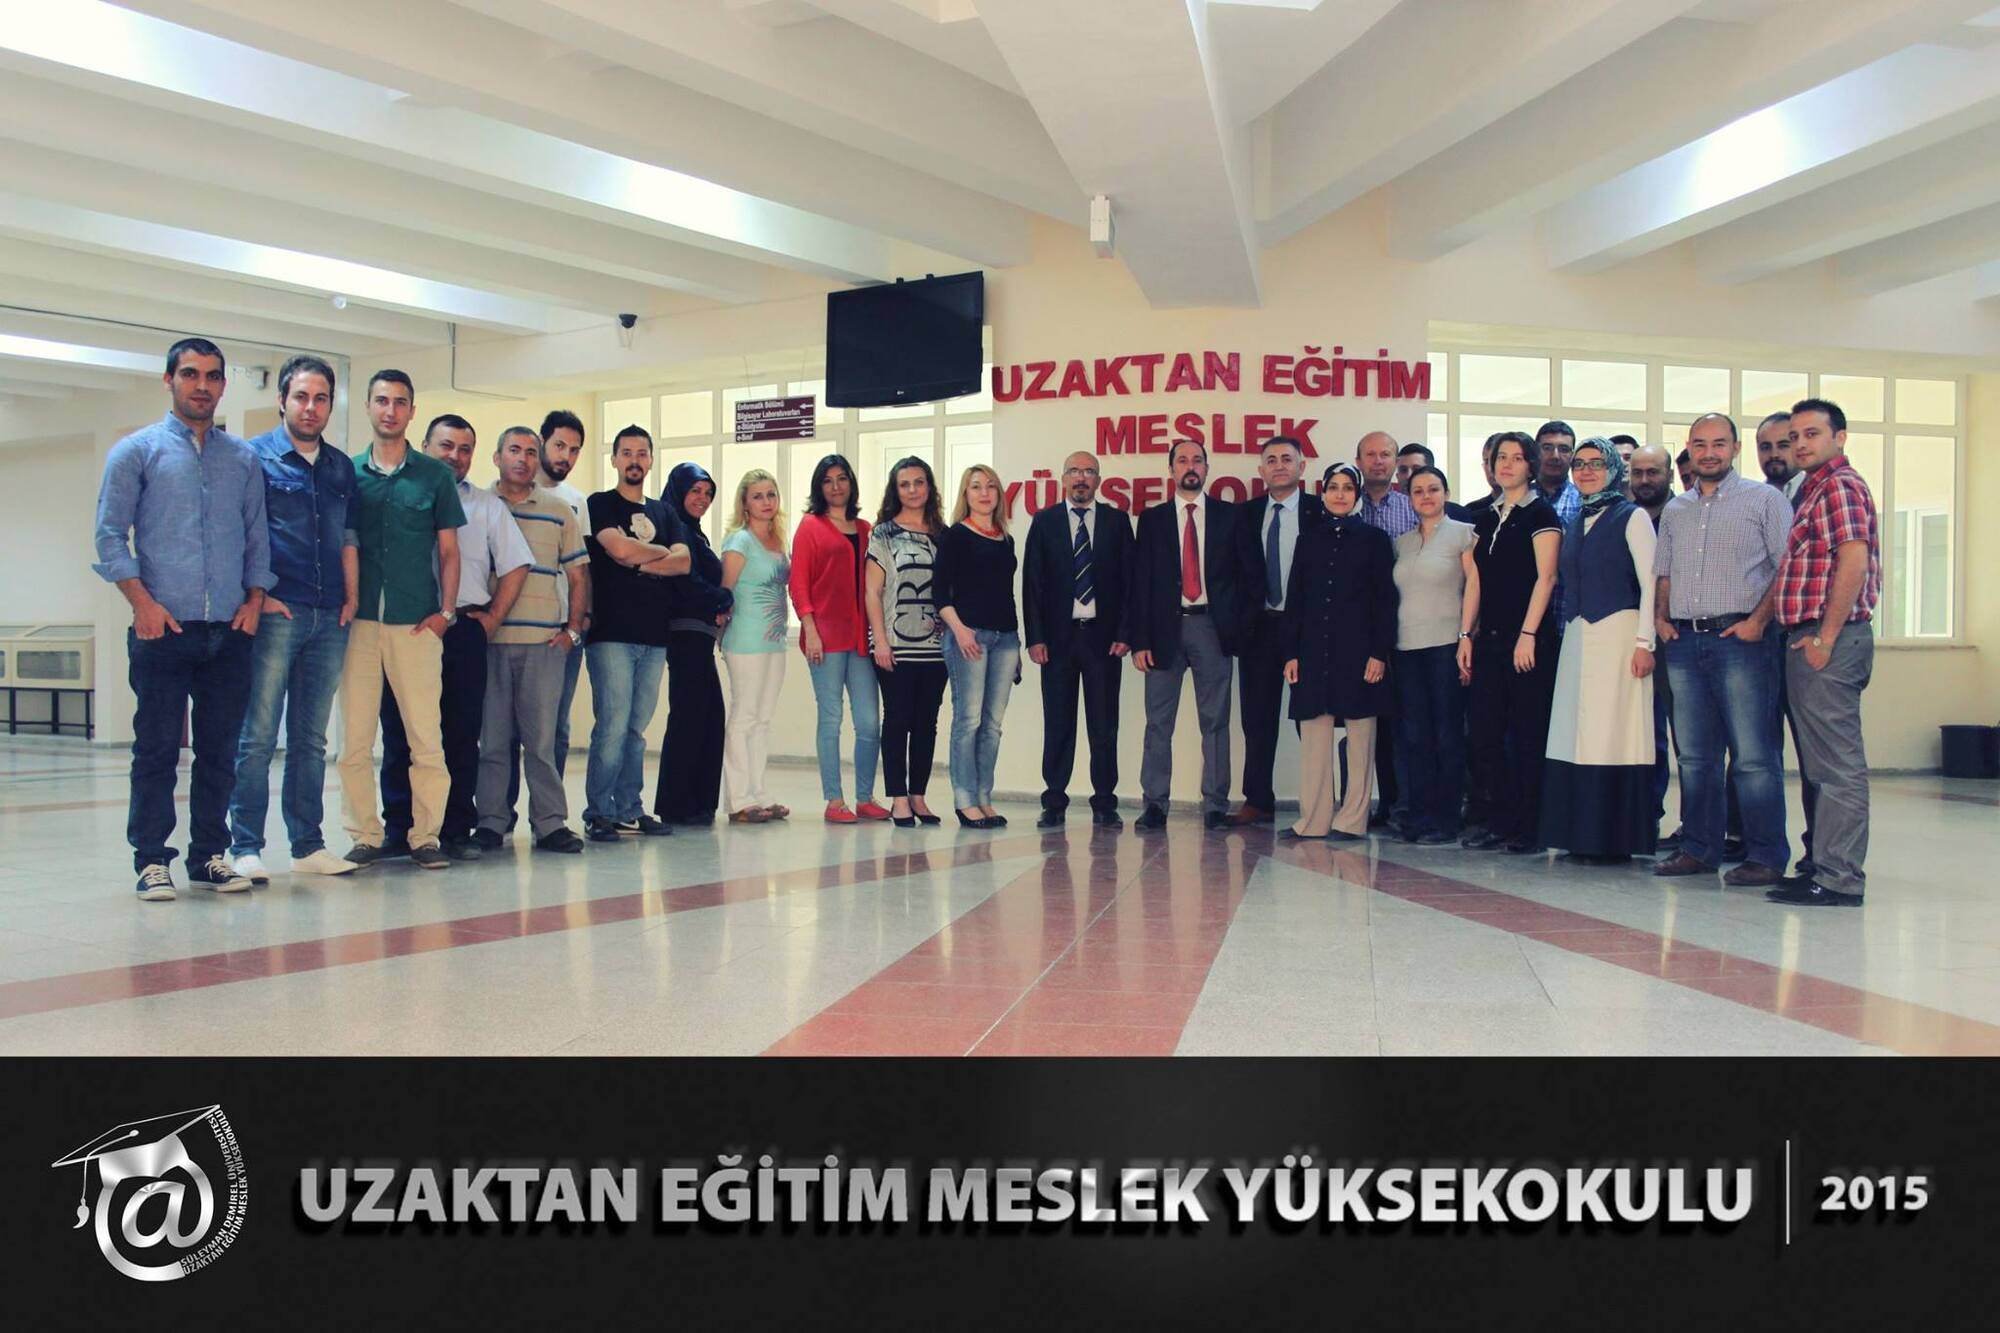 Süleyman Demirel Üniversitesi Uzaktan Eğitim Meslek Yüksekokulu